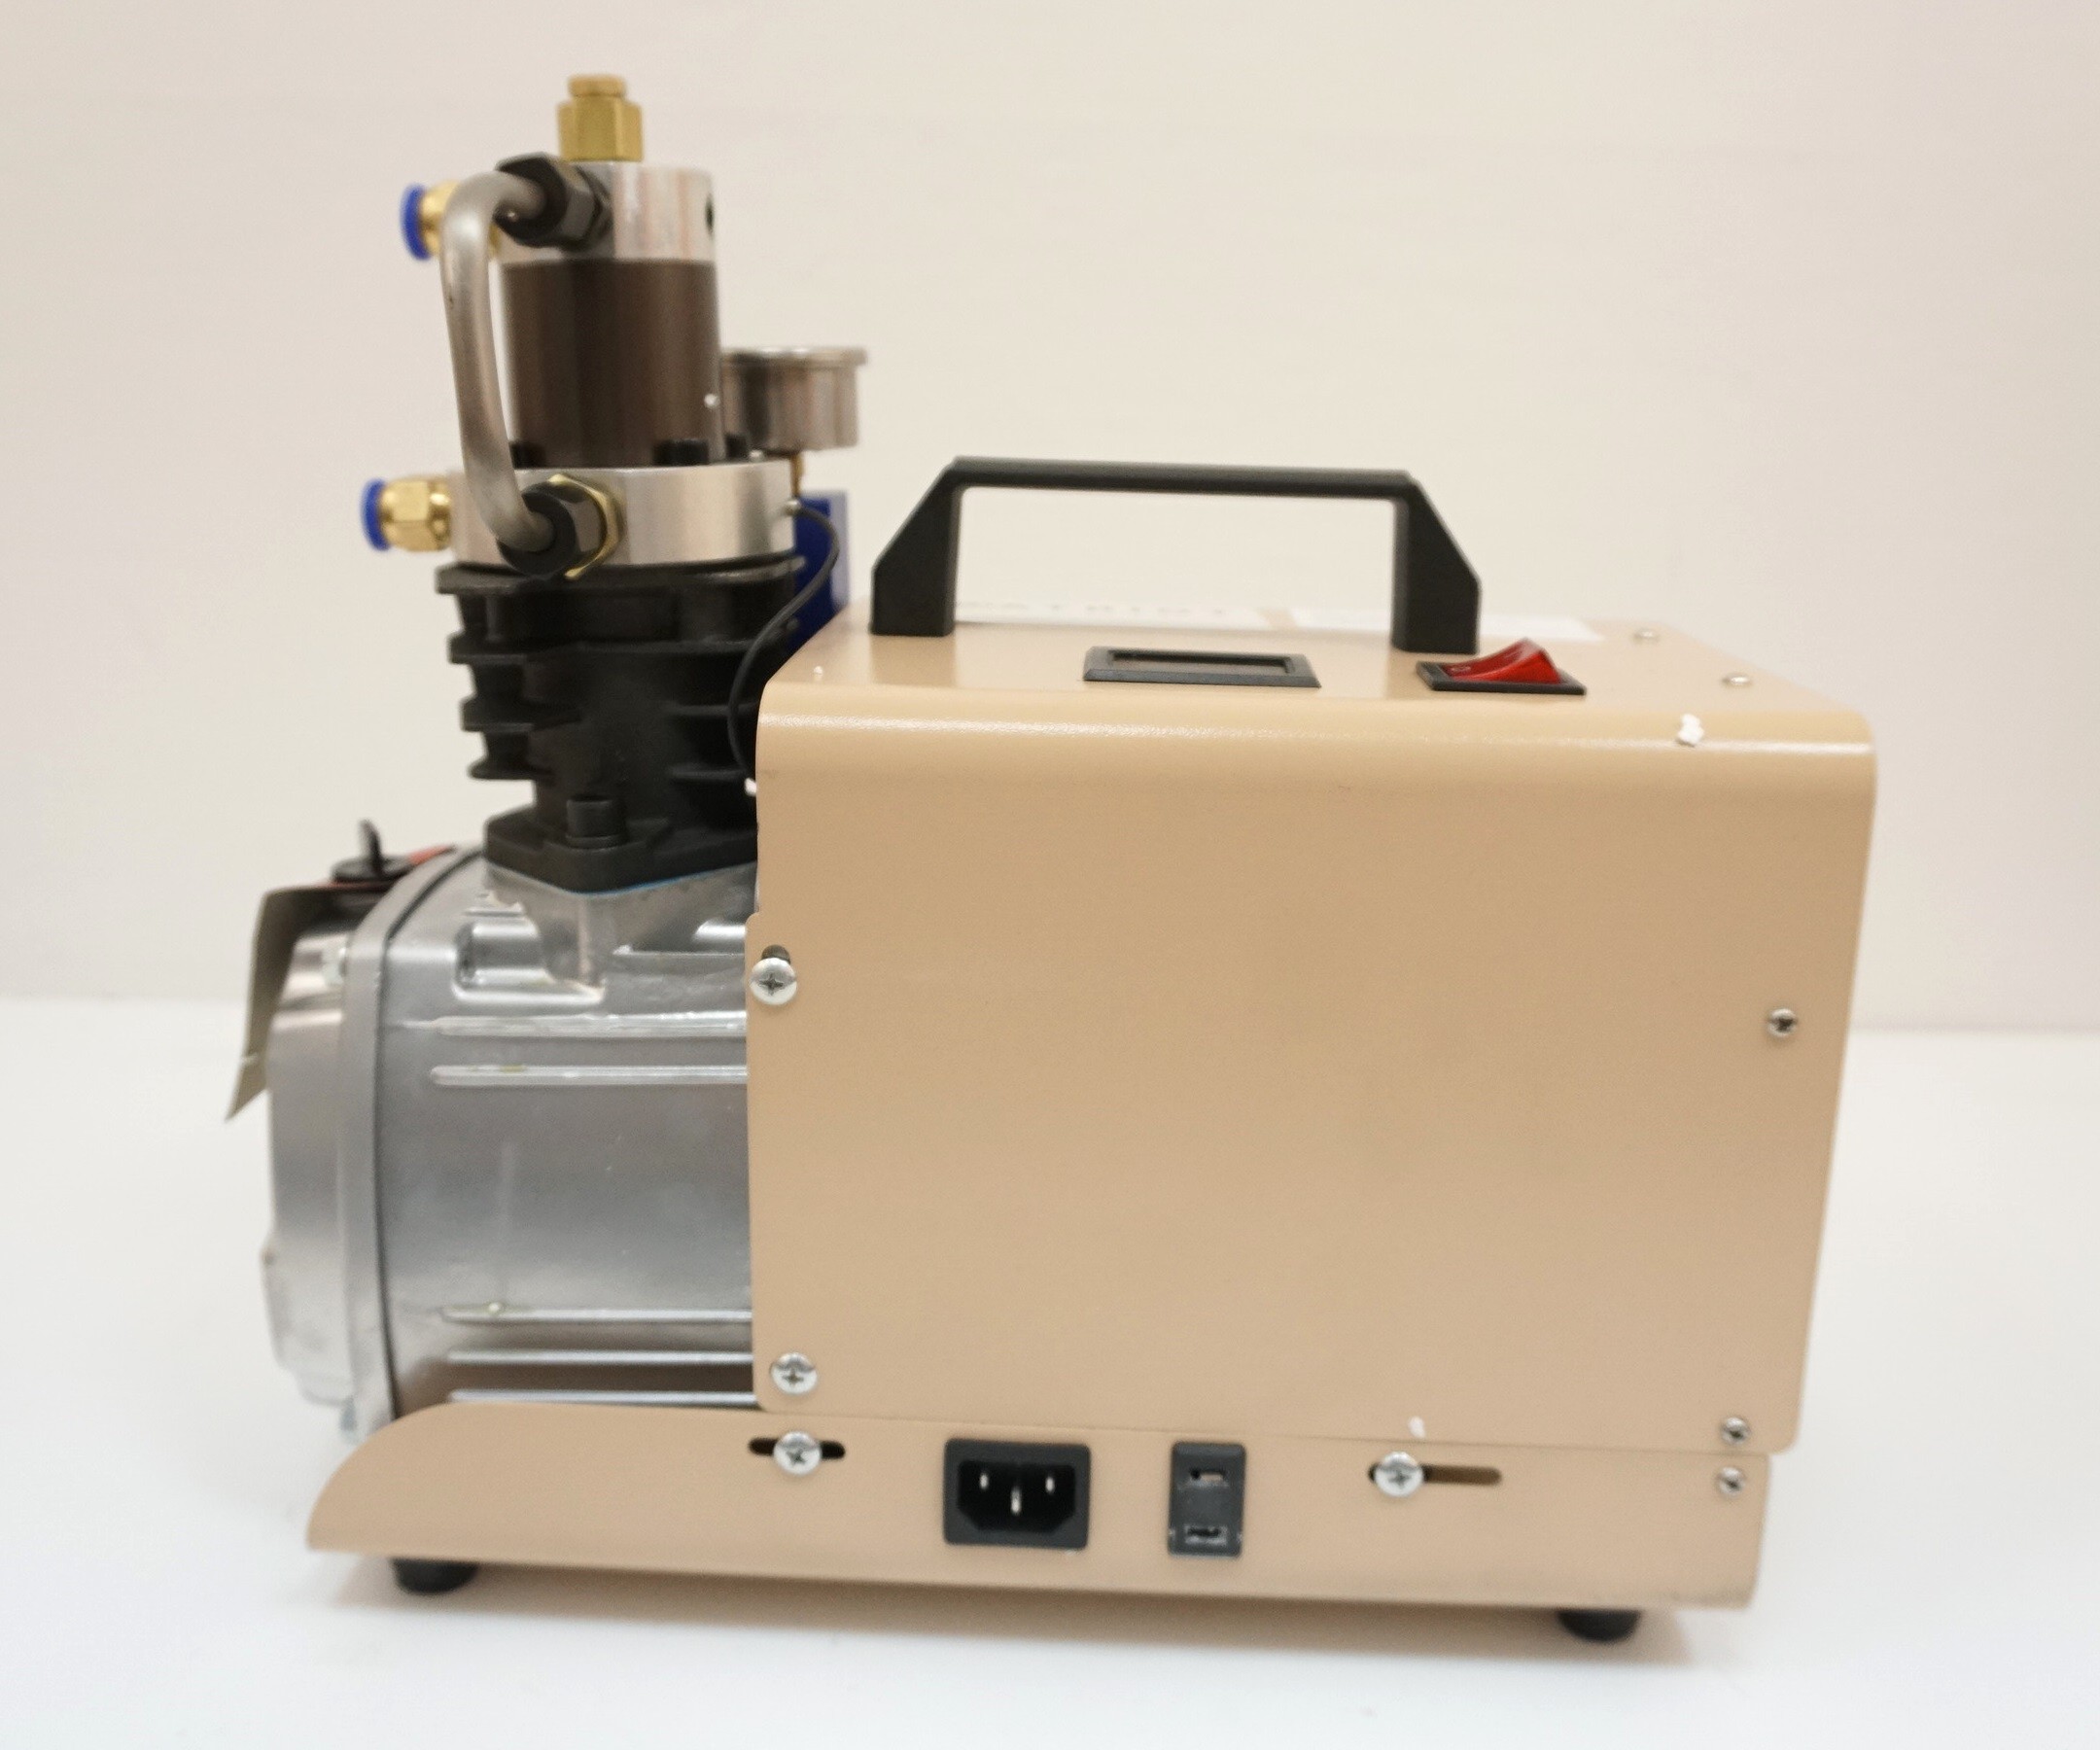 Компрессор E4 1,8 кВт, 50 л/мин с водяным охлаждением и фильтром осушителем, изображение 2